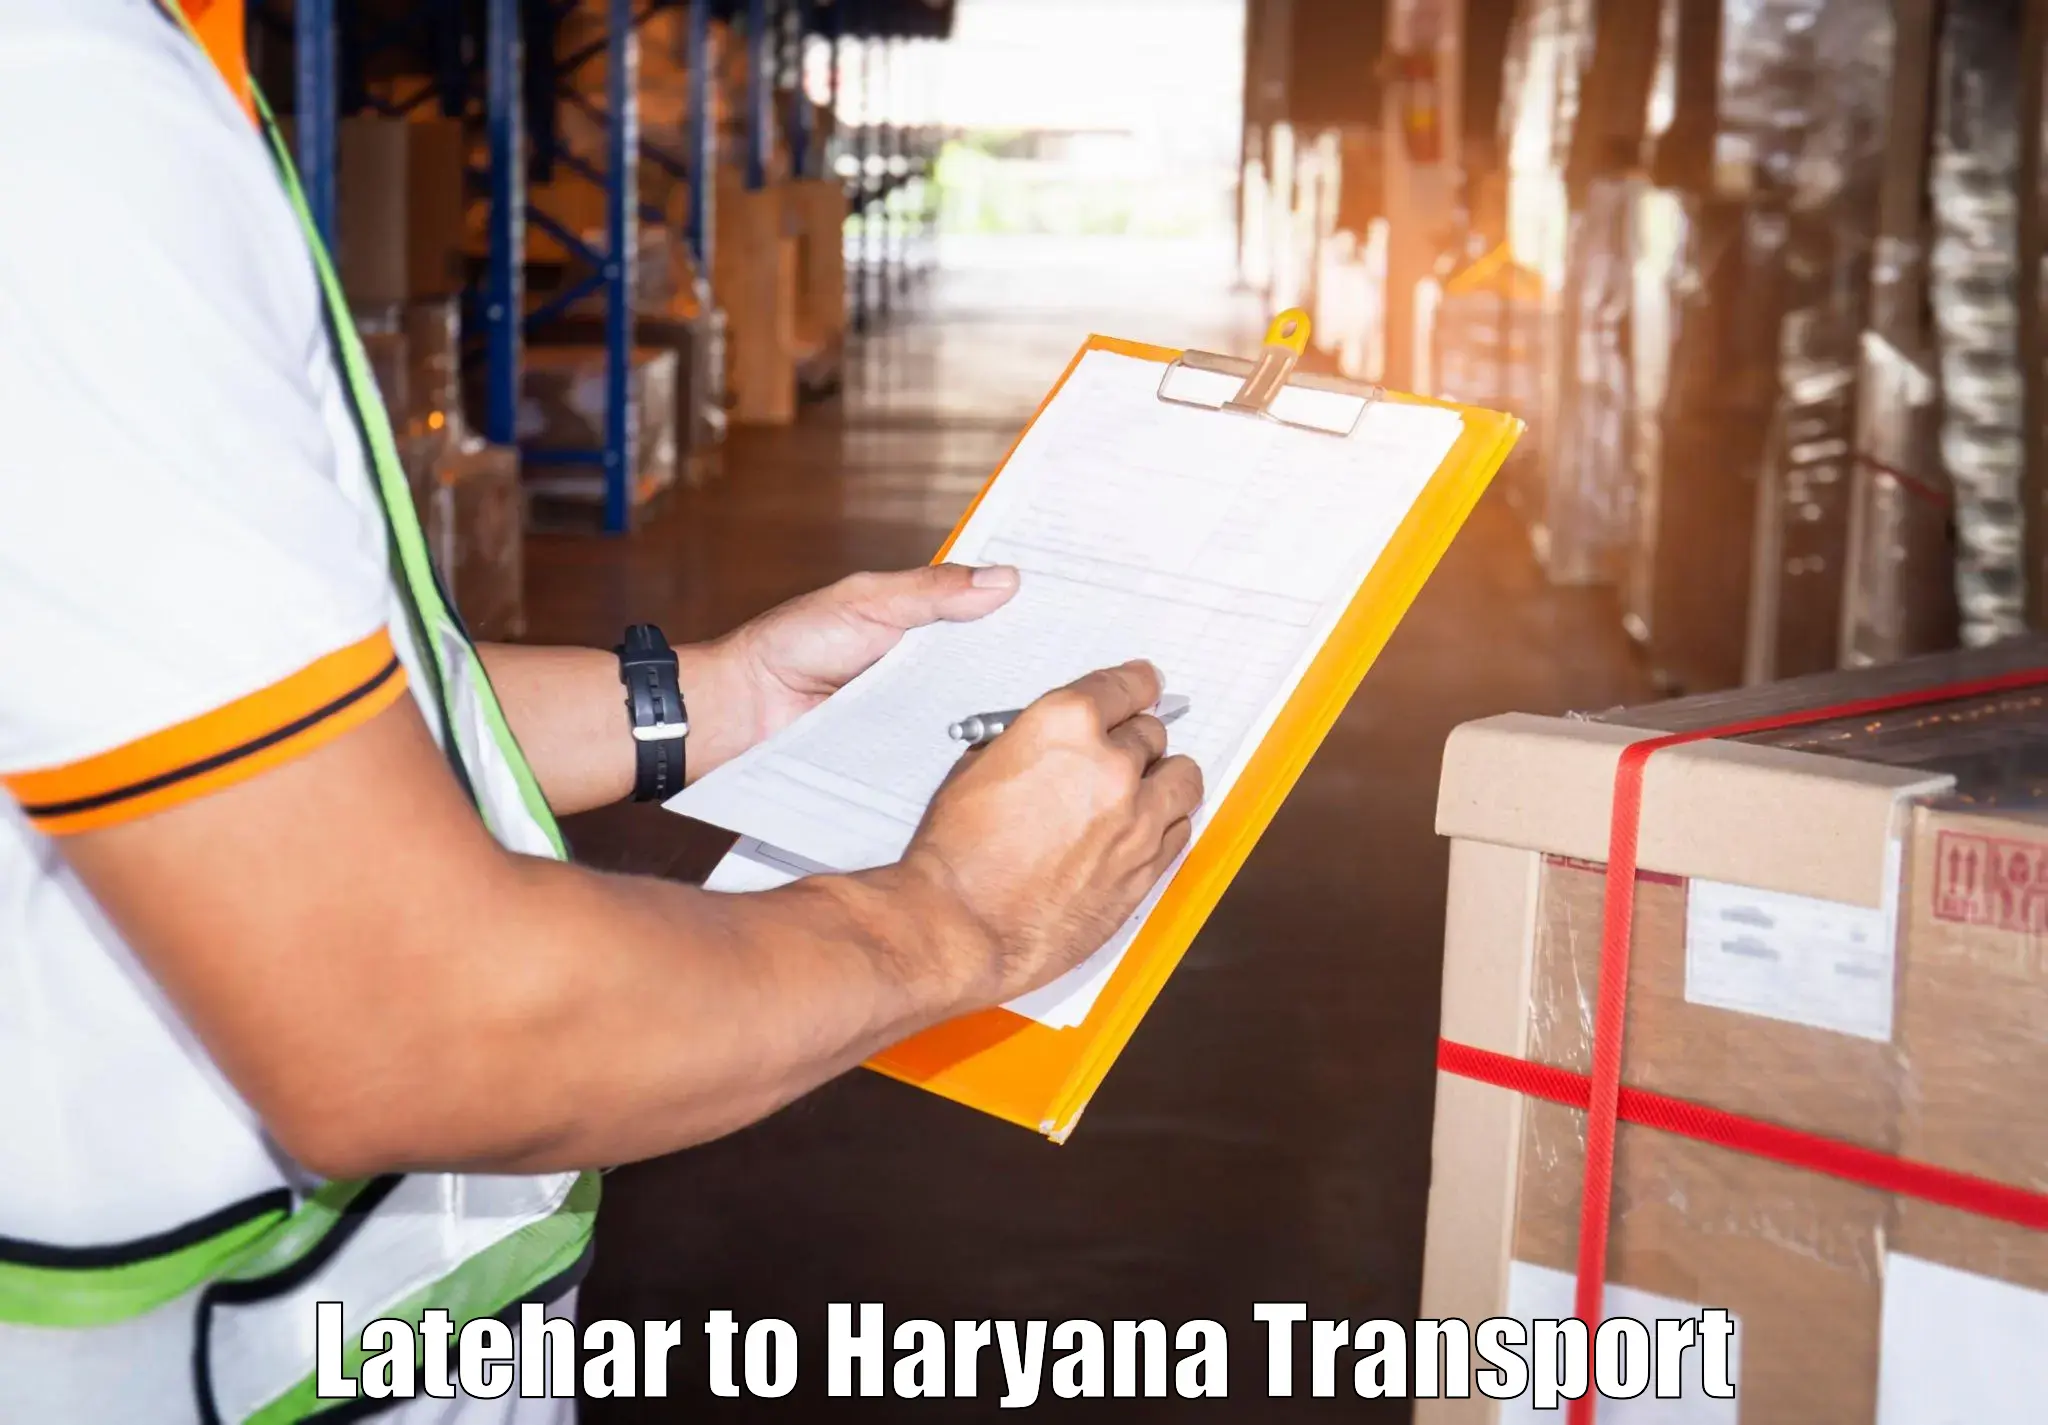 Air cargo transport services Latehar to Rewari